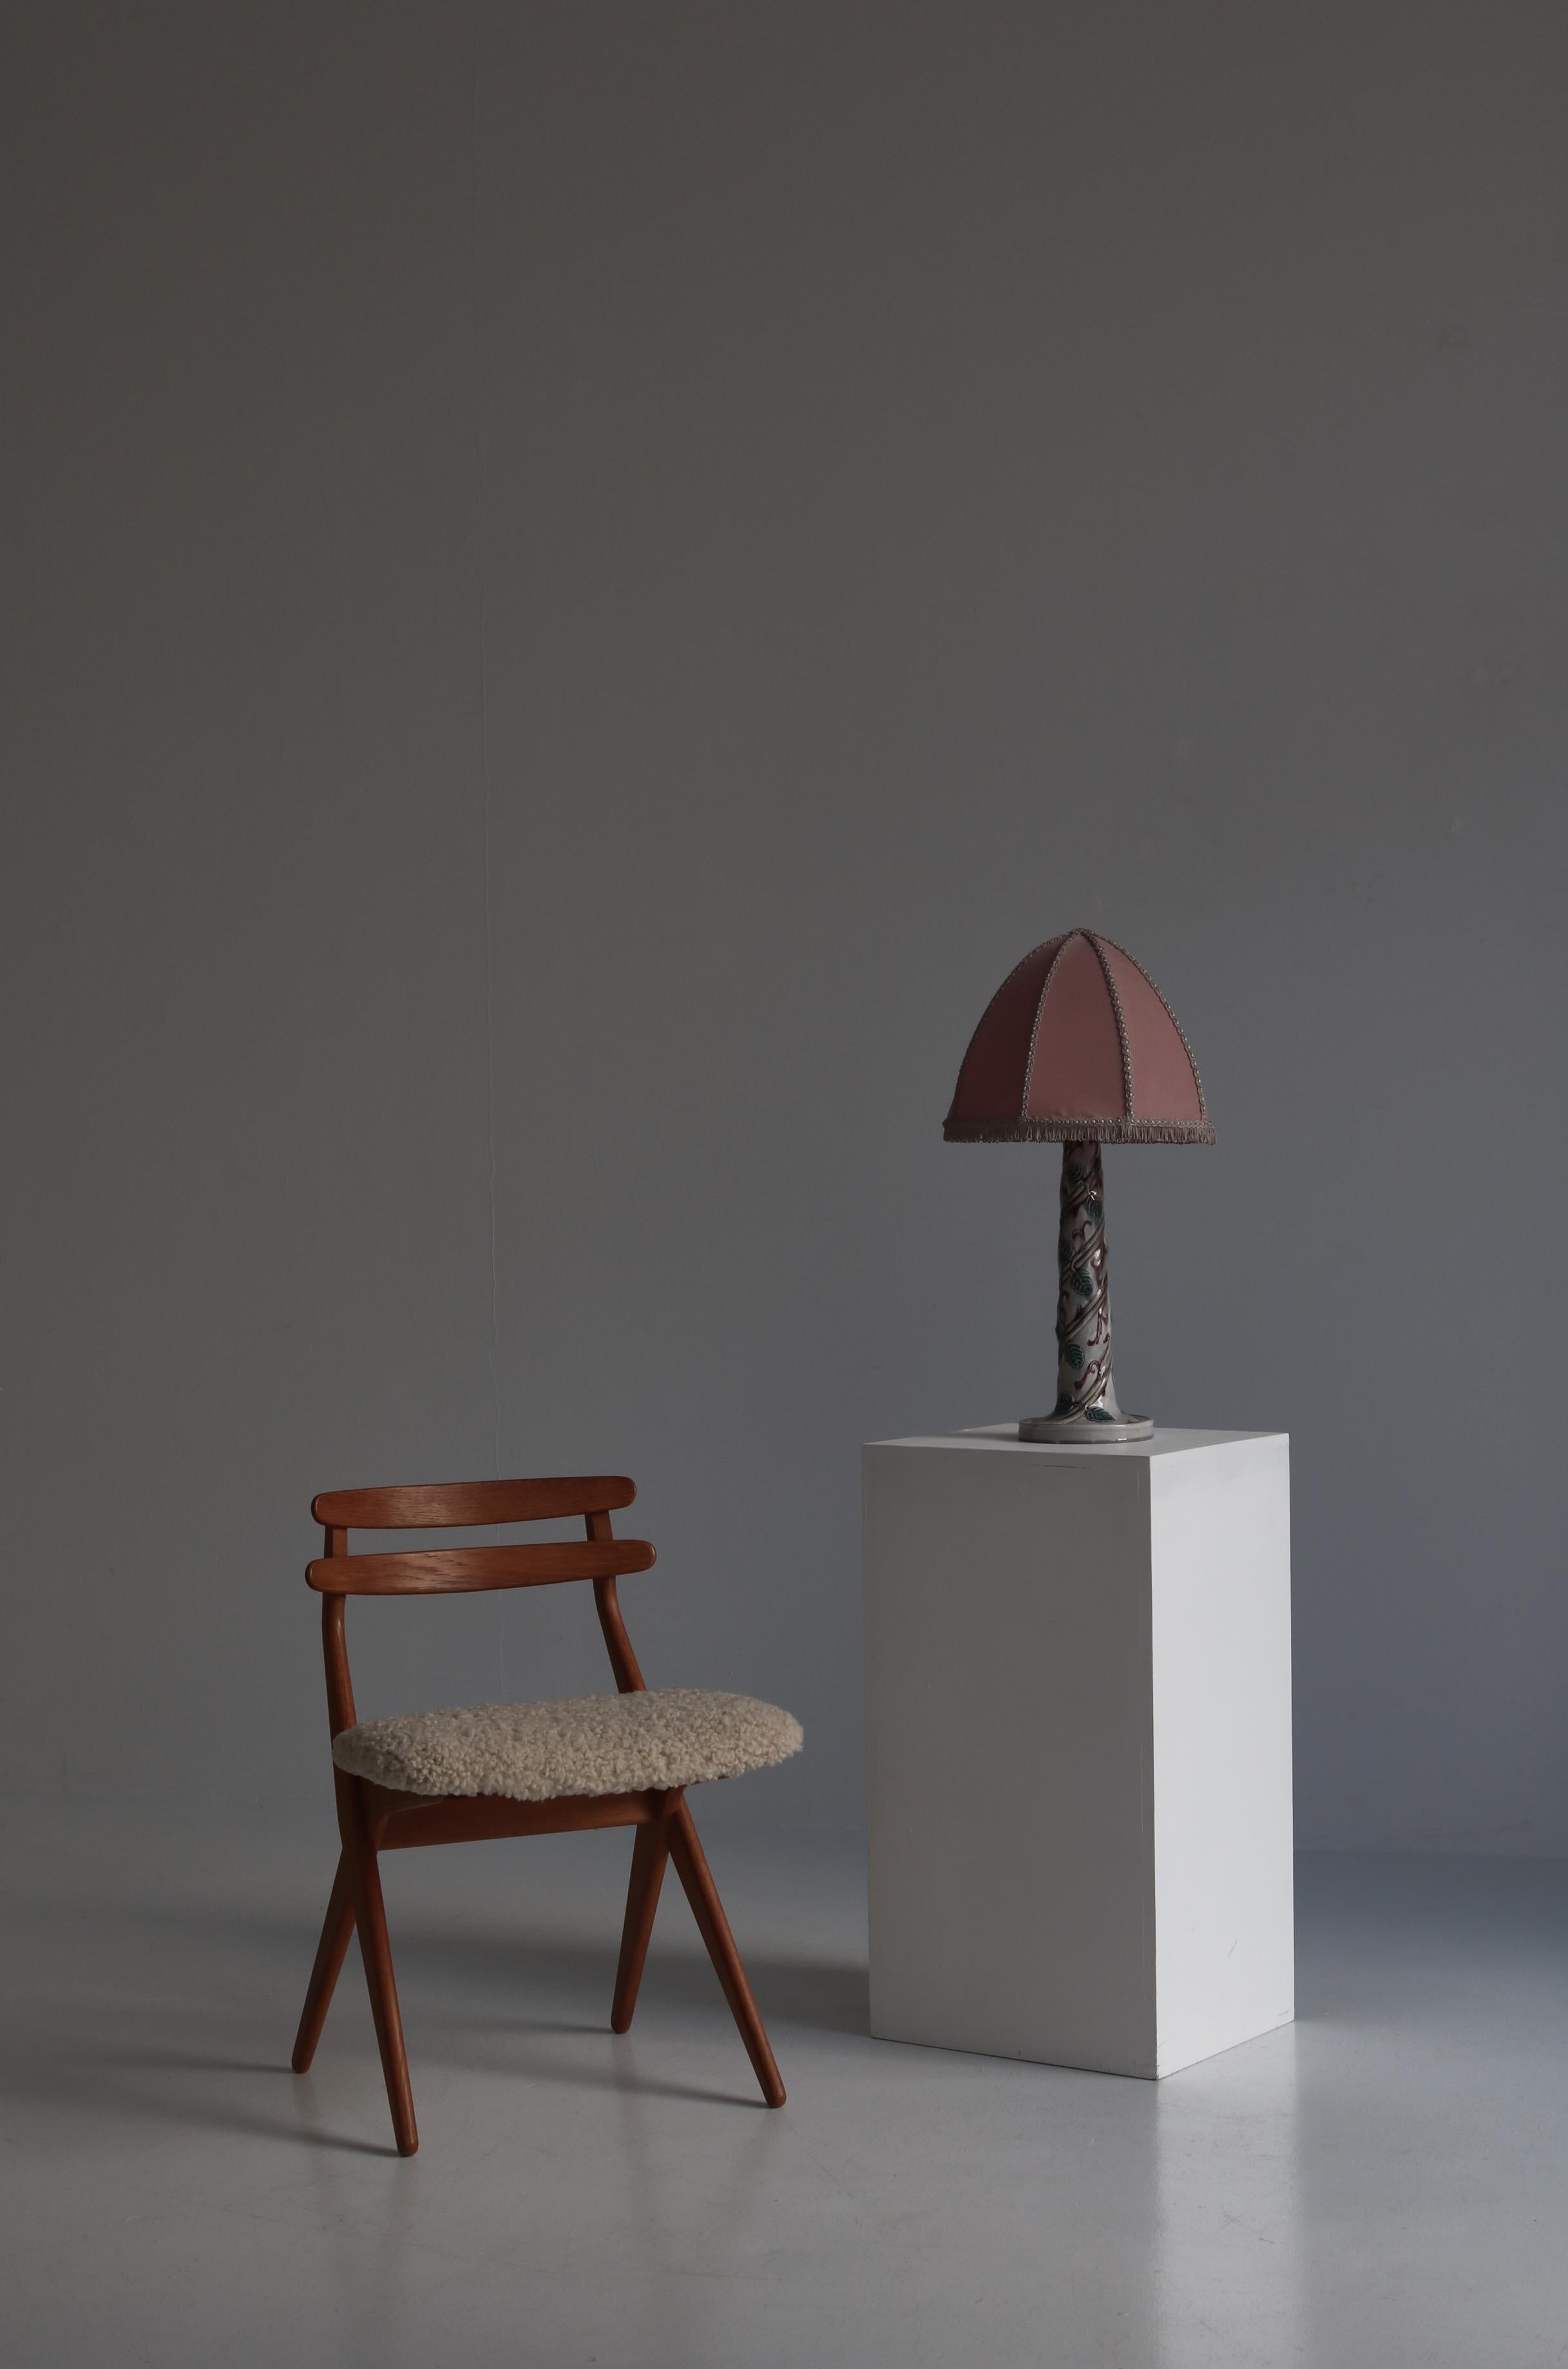 Merveilleuse et unique lampe de table réalisée par l'artiste suédoise Louise Adelborg dans les années 1920. La base de la lampe est fabriquée en porcelaine émaillée avec une décoration de feuillage faite à la main. La lampe est montée avec